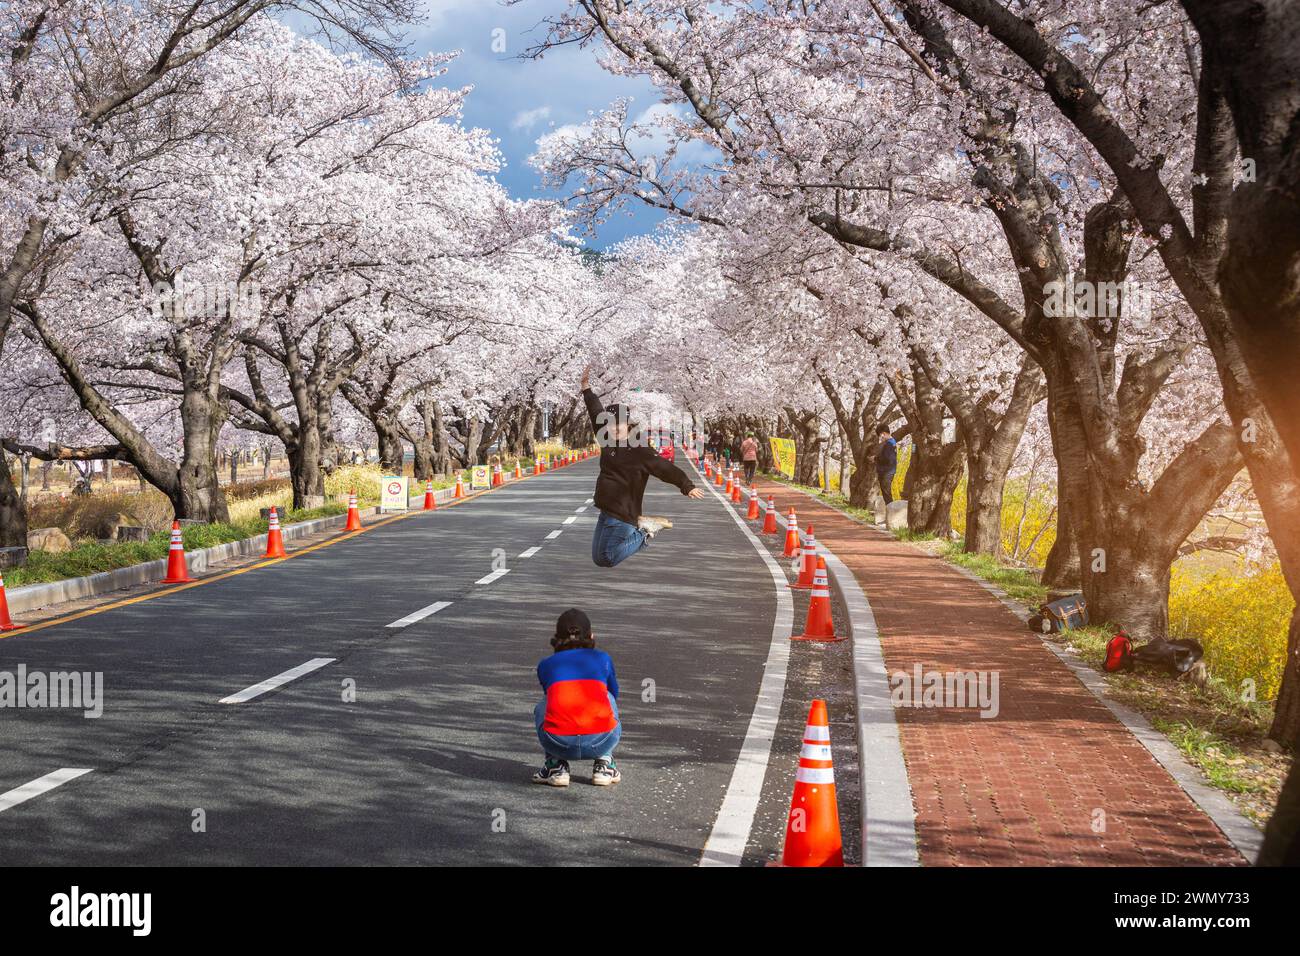 Touristes prenant des photos dans le tunnel des cerisiers en fleurs et des cerisiers des deux côtés de la route au festival des cerisiers en fleurs à Gyeongju, en Corée du Sud. Banque D'Images